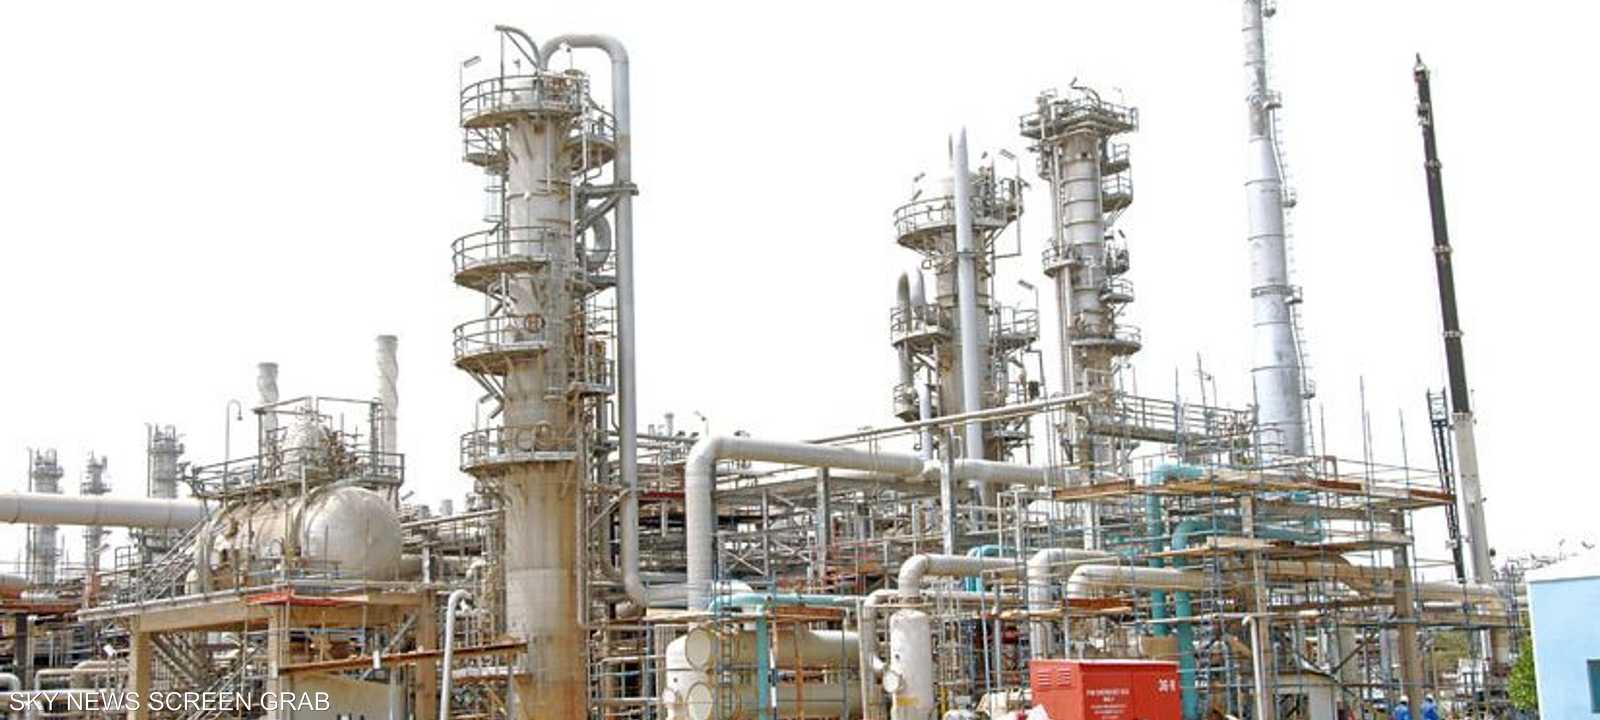 مصفاة الأحمدي لإنتاج وتكرير النفط في الكويت. (أرشيف)